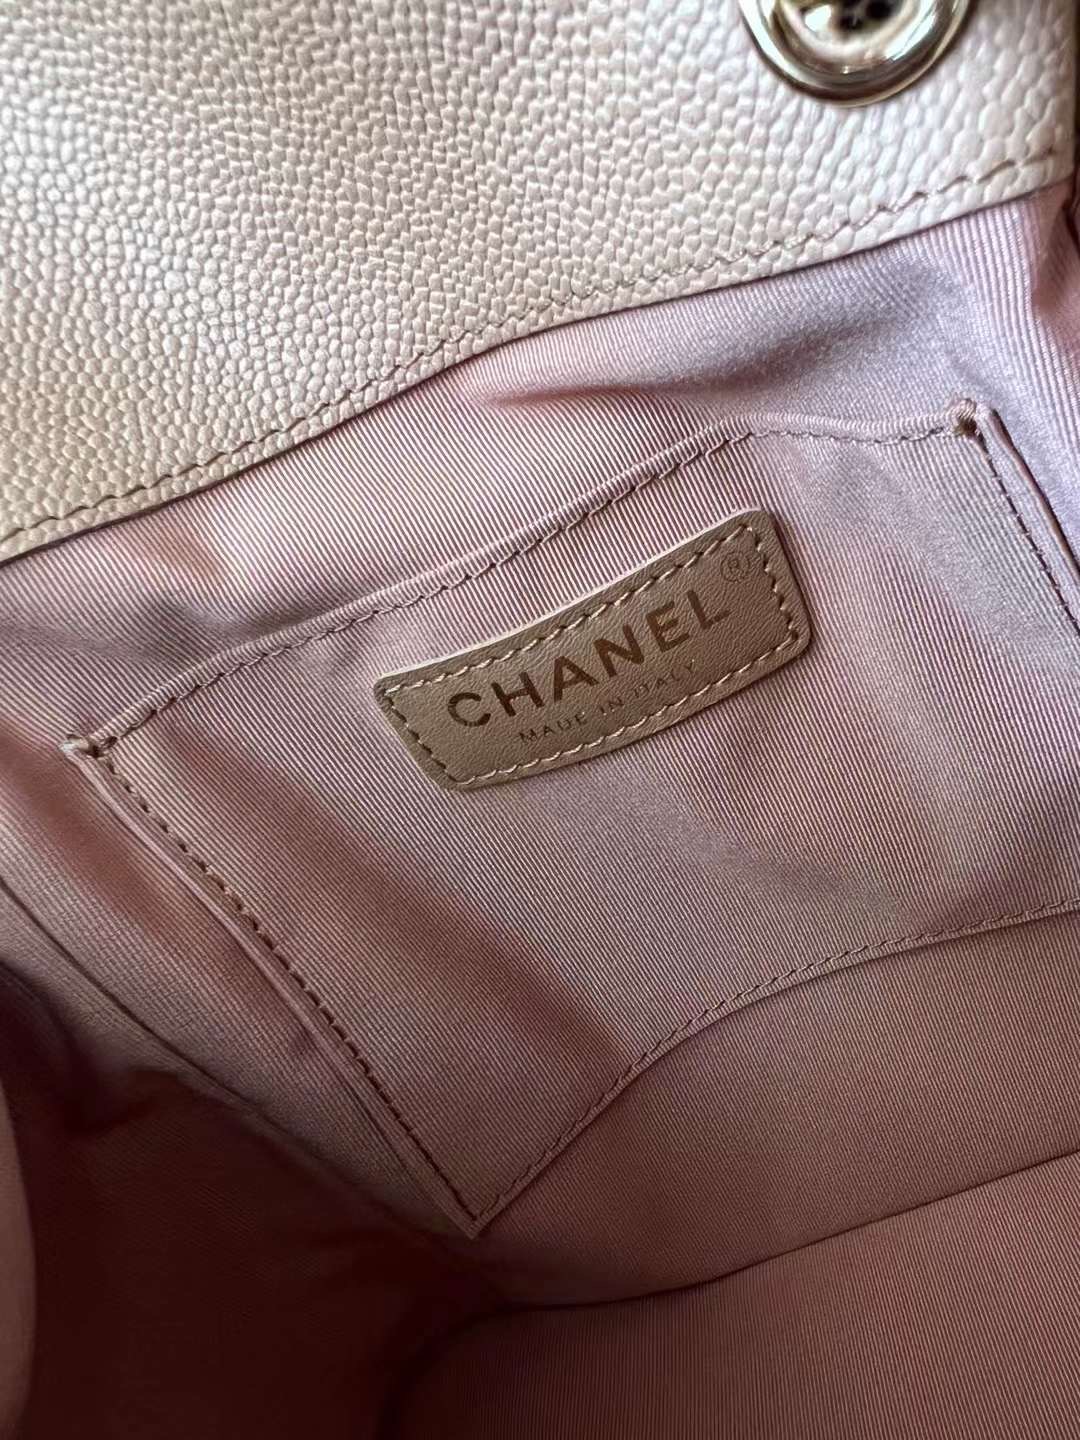 【P2180/2330】Chanel Duma 香奈儿奶茶色球纹牛皮双口袋后背包双肩包